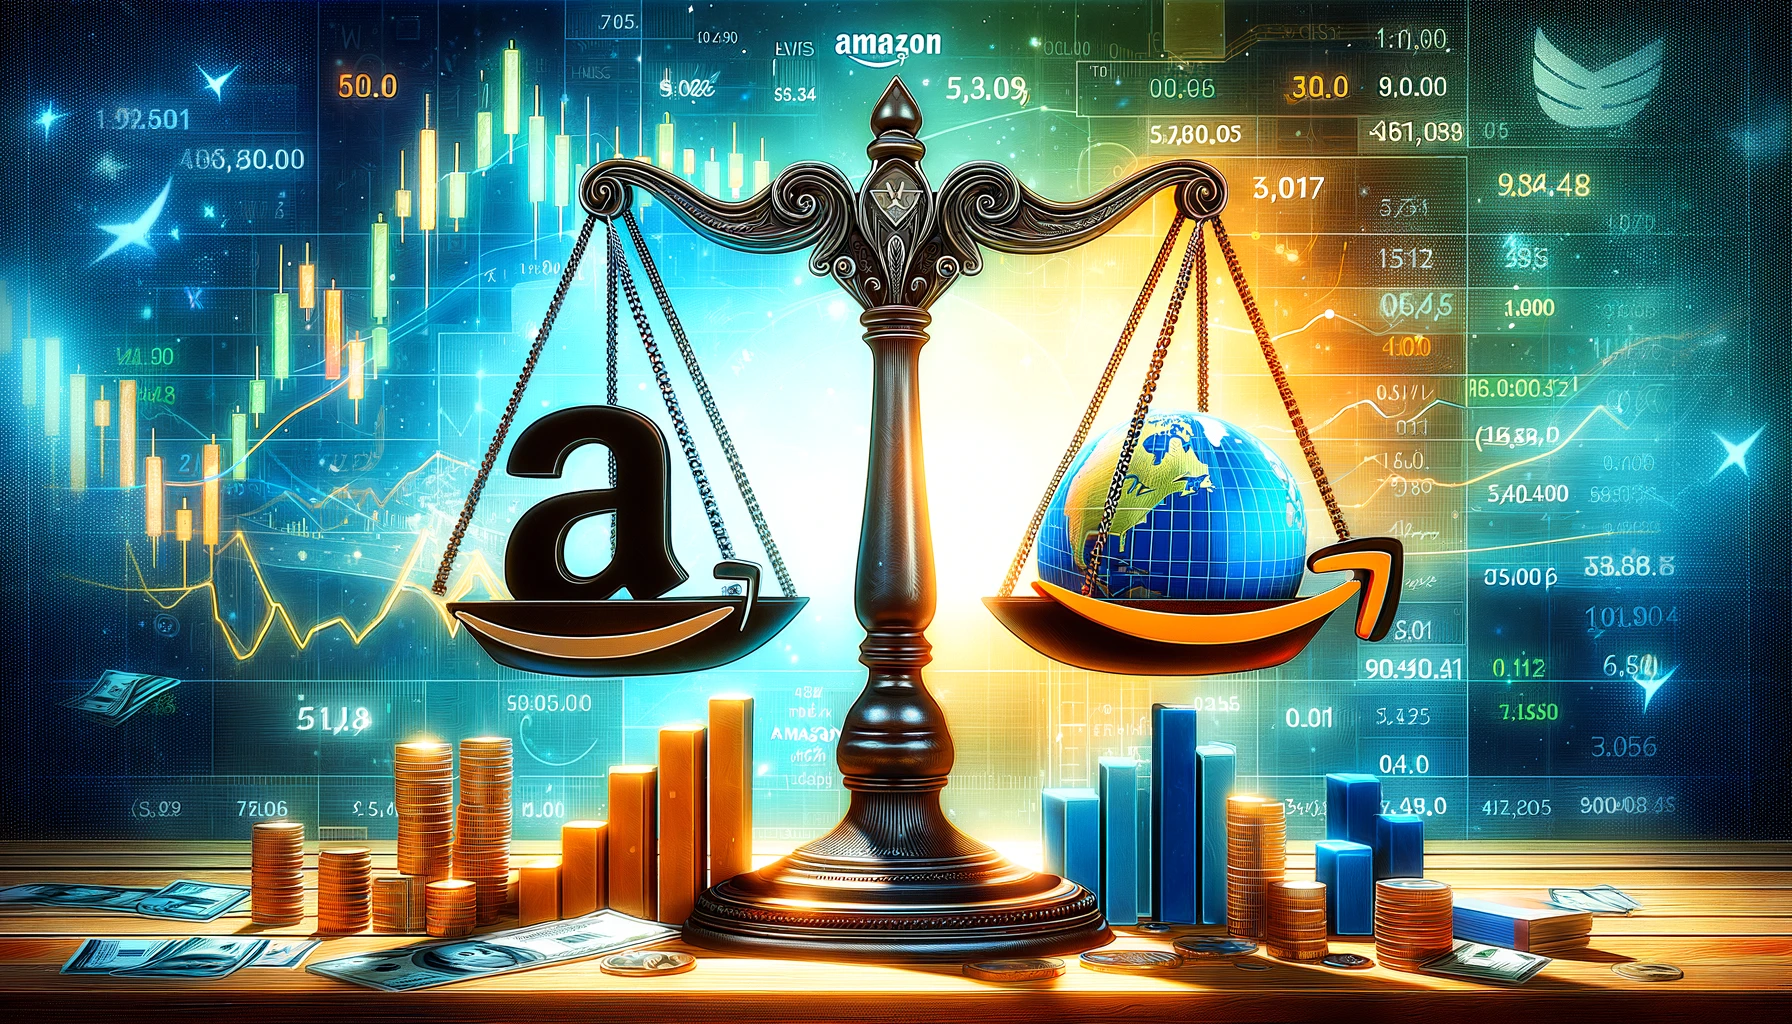 Amazon’s Triumph im Steuerstreit: Ein Wendepunkt für Investoren?